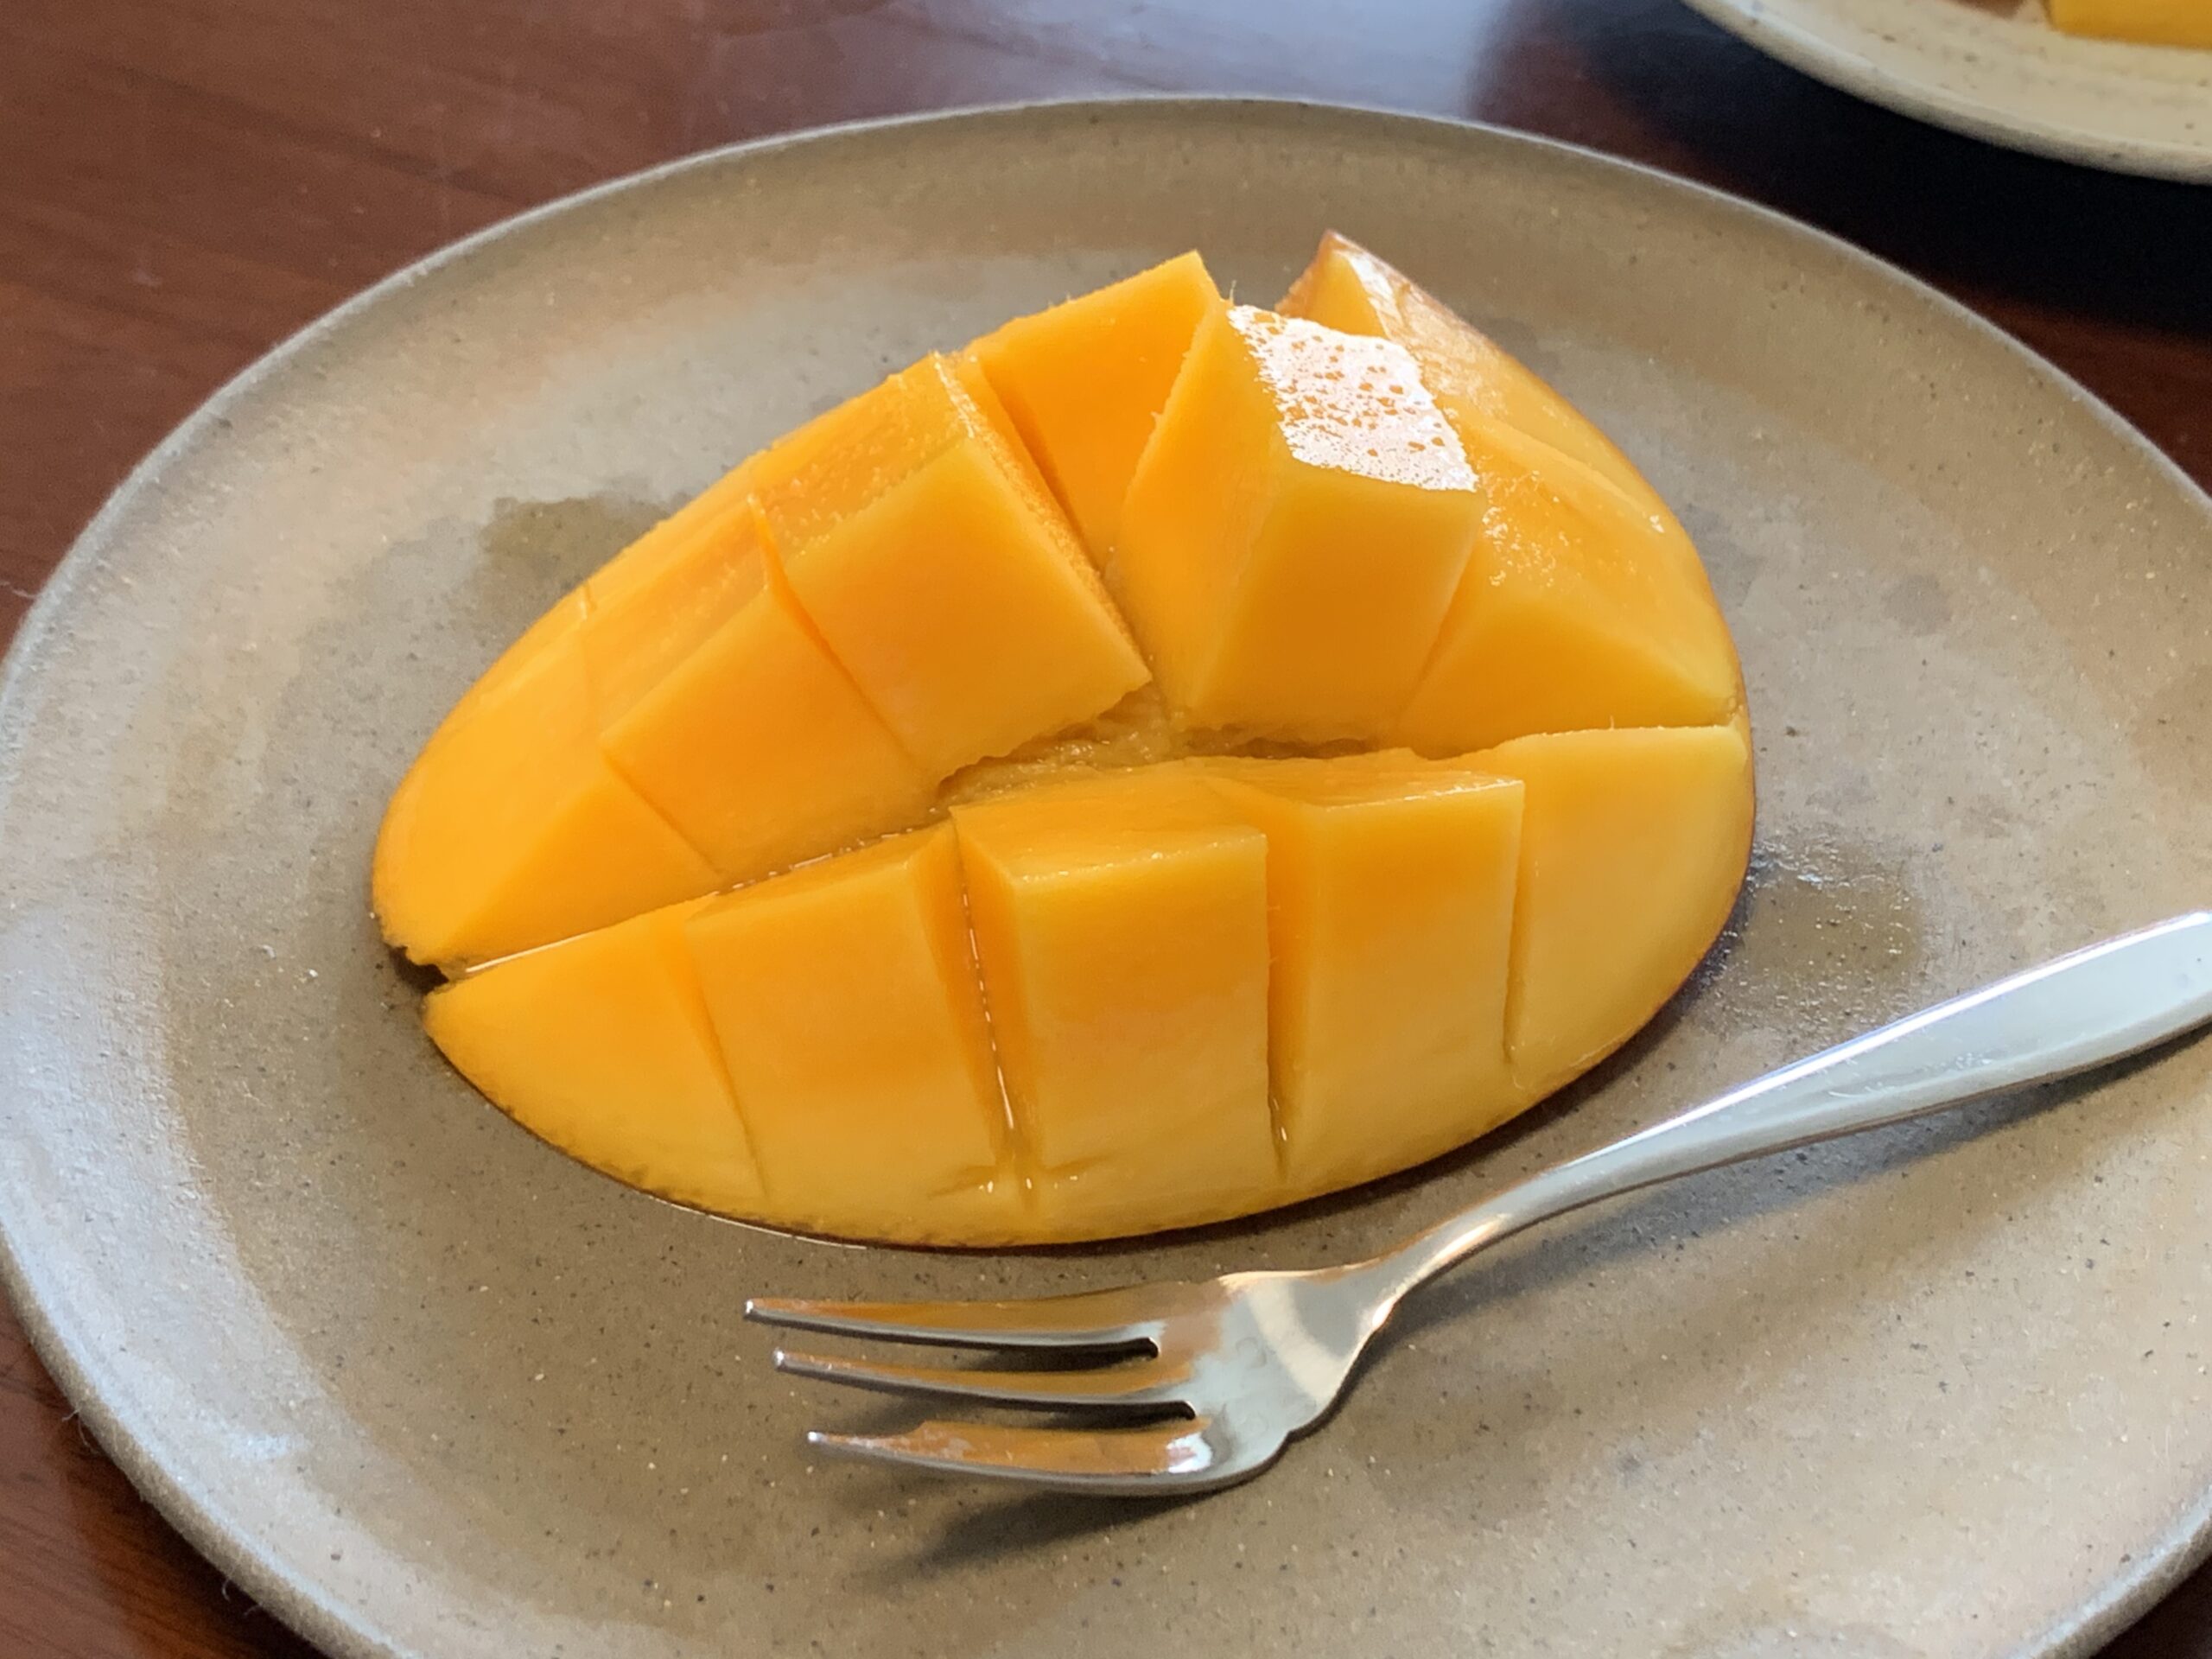 奄美大島の無肥料のマンゴー